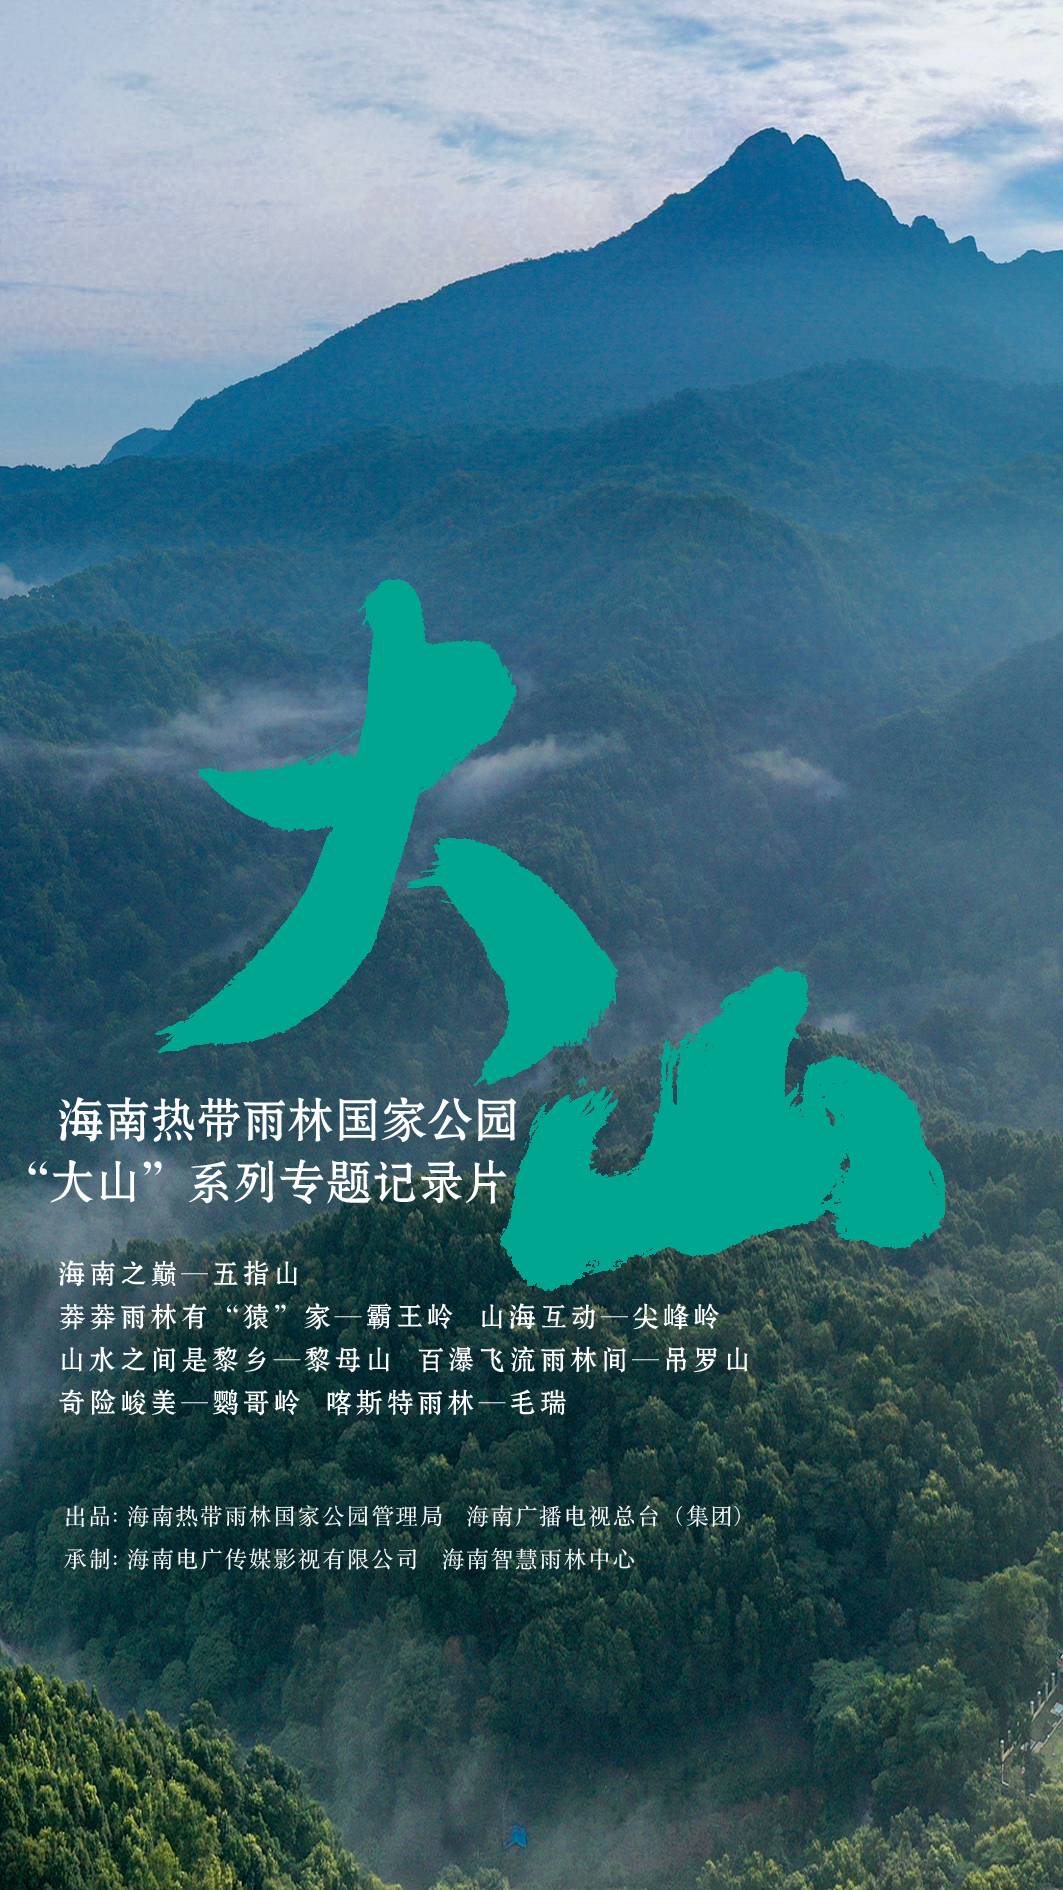 海南热带雨林国家公园“大山”系列专题记录片